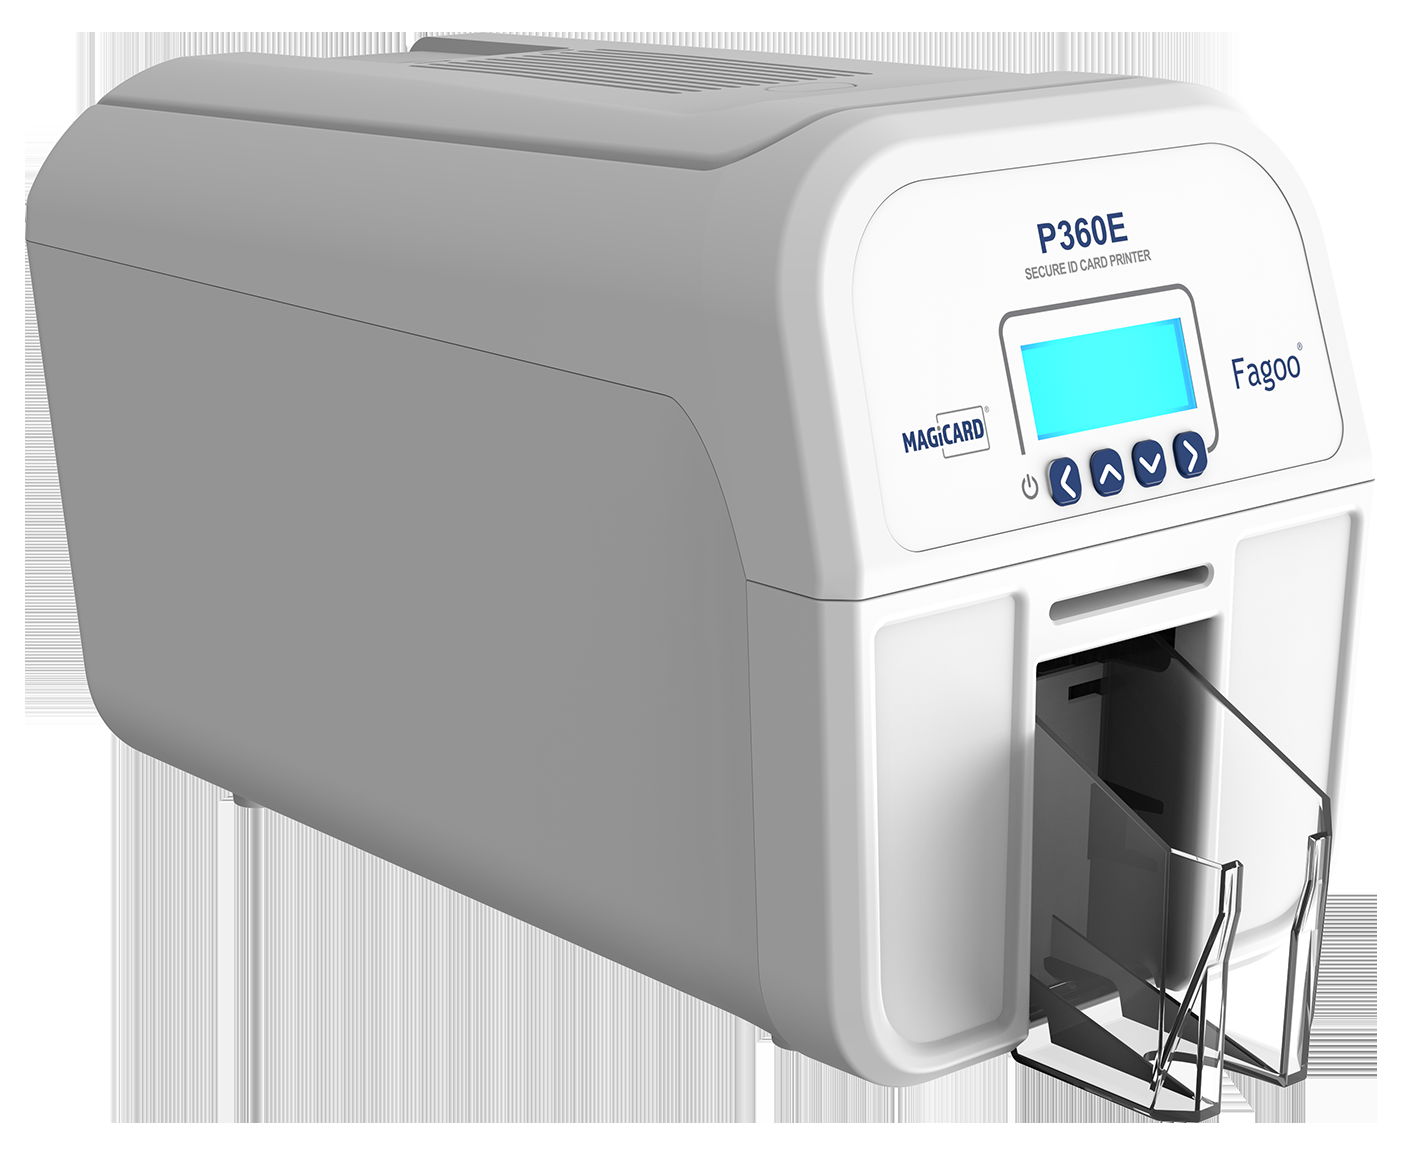 FAGOO P360E Card Printer